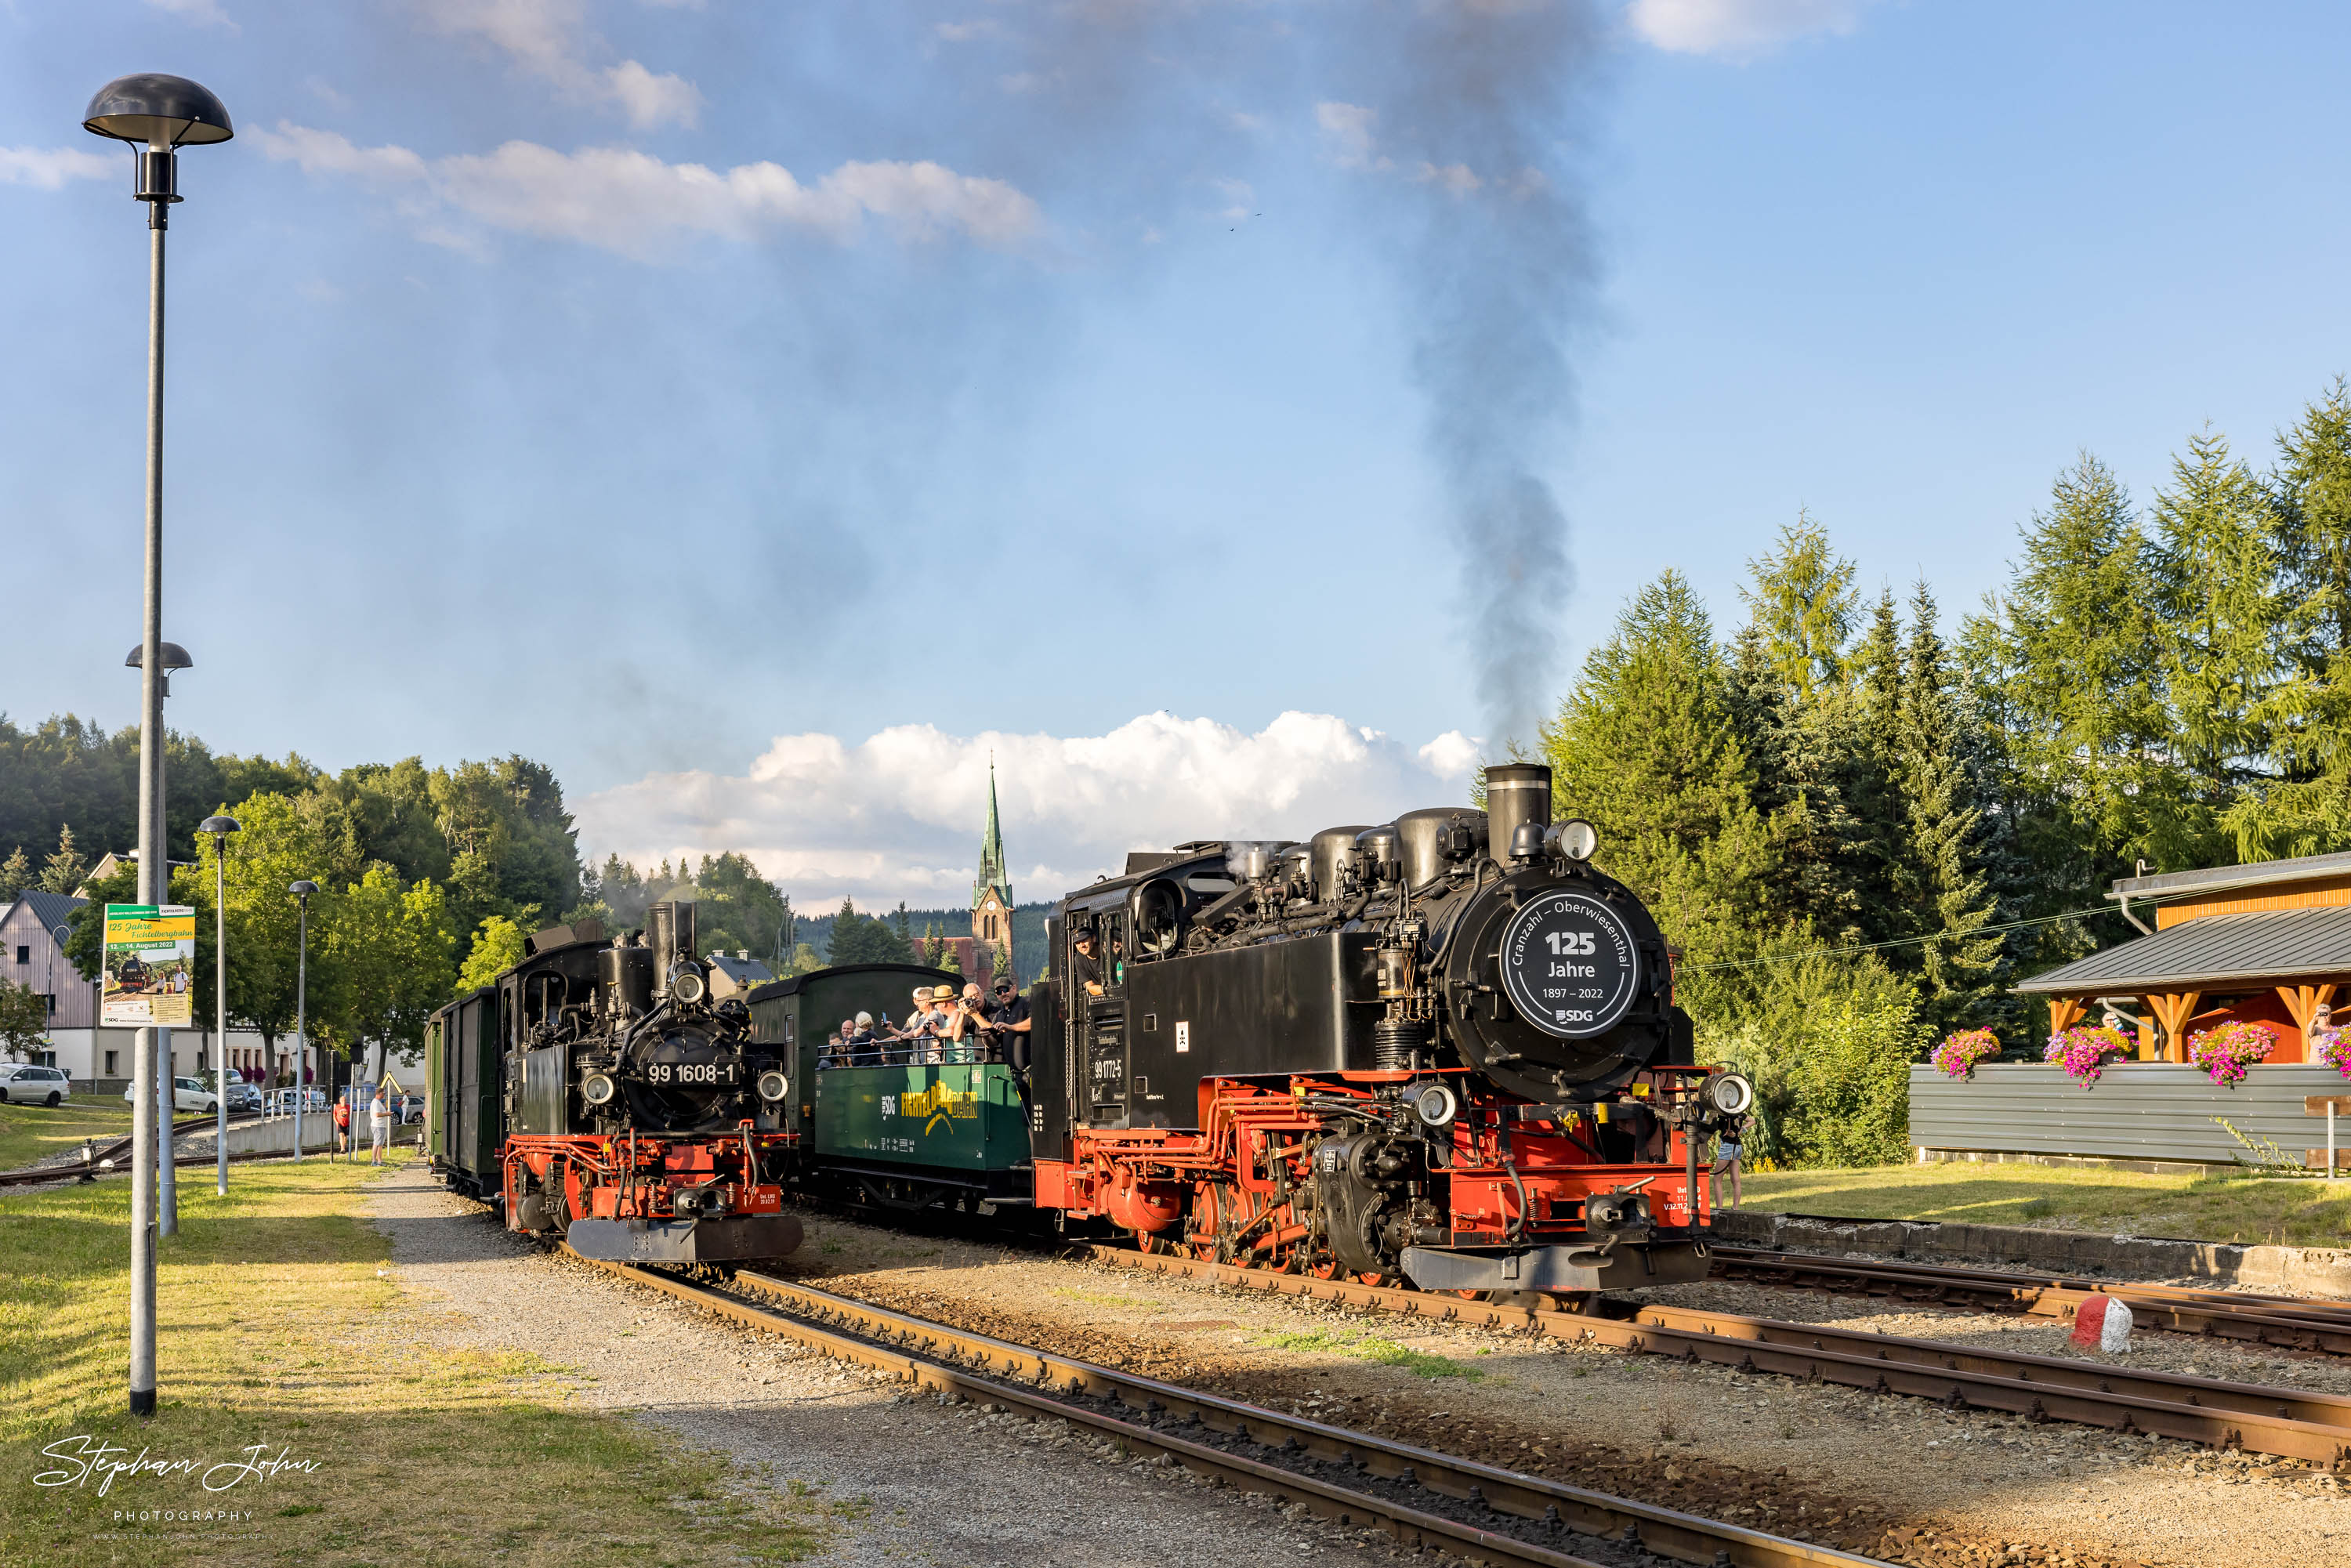 zug P 1023 mit Lok 99 1608-1 nach Oberwiesenthal steht in Hammerunterwiesenthal und wird von Zug P 1011 überholt.